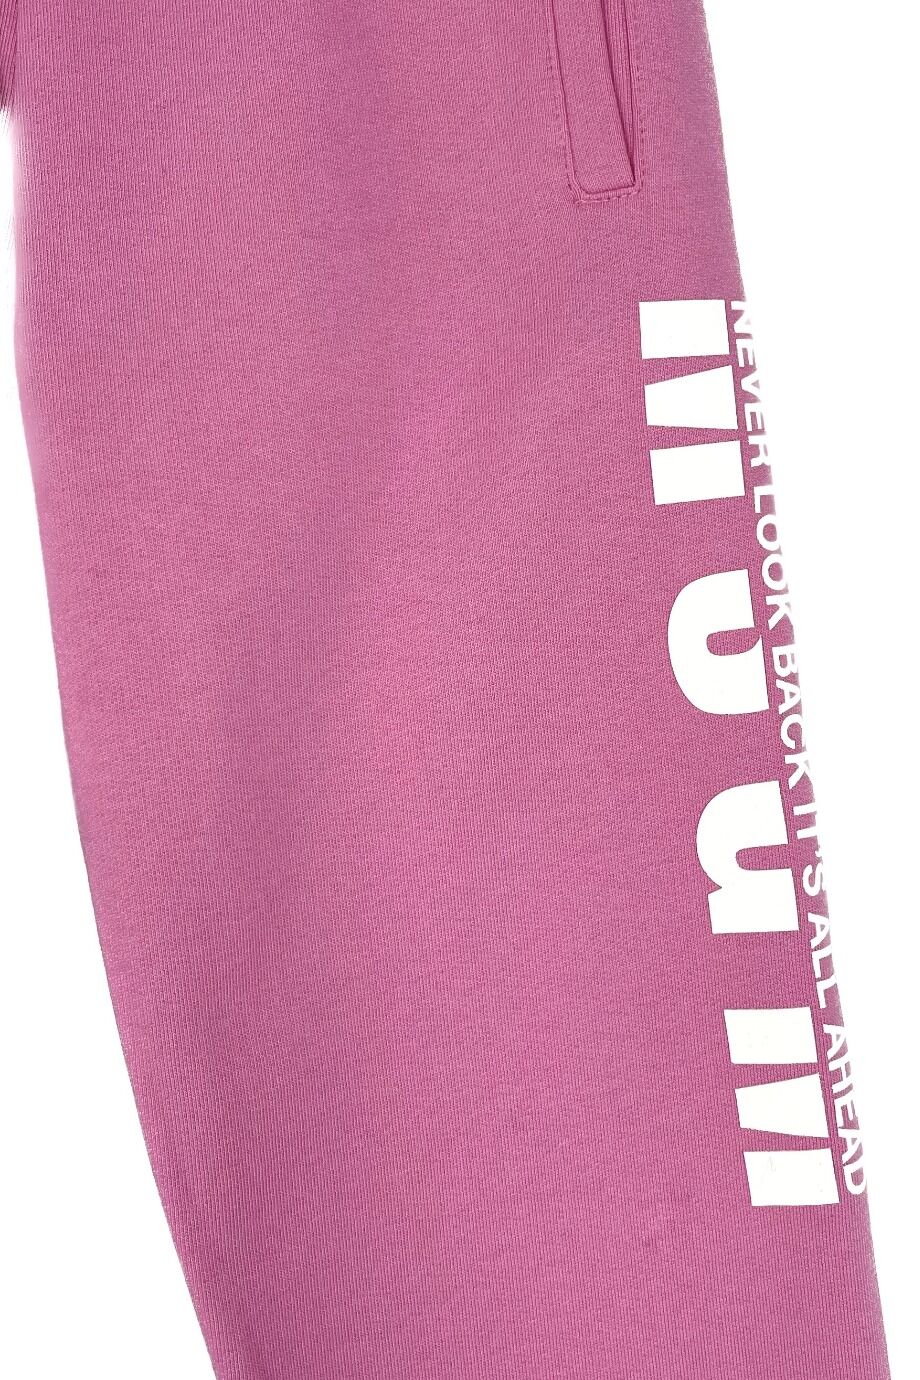 image 2 Детские спортивные брюки розового цвета с надписью